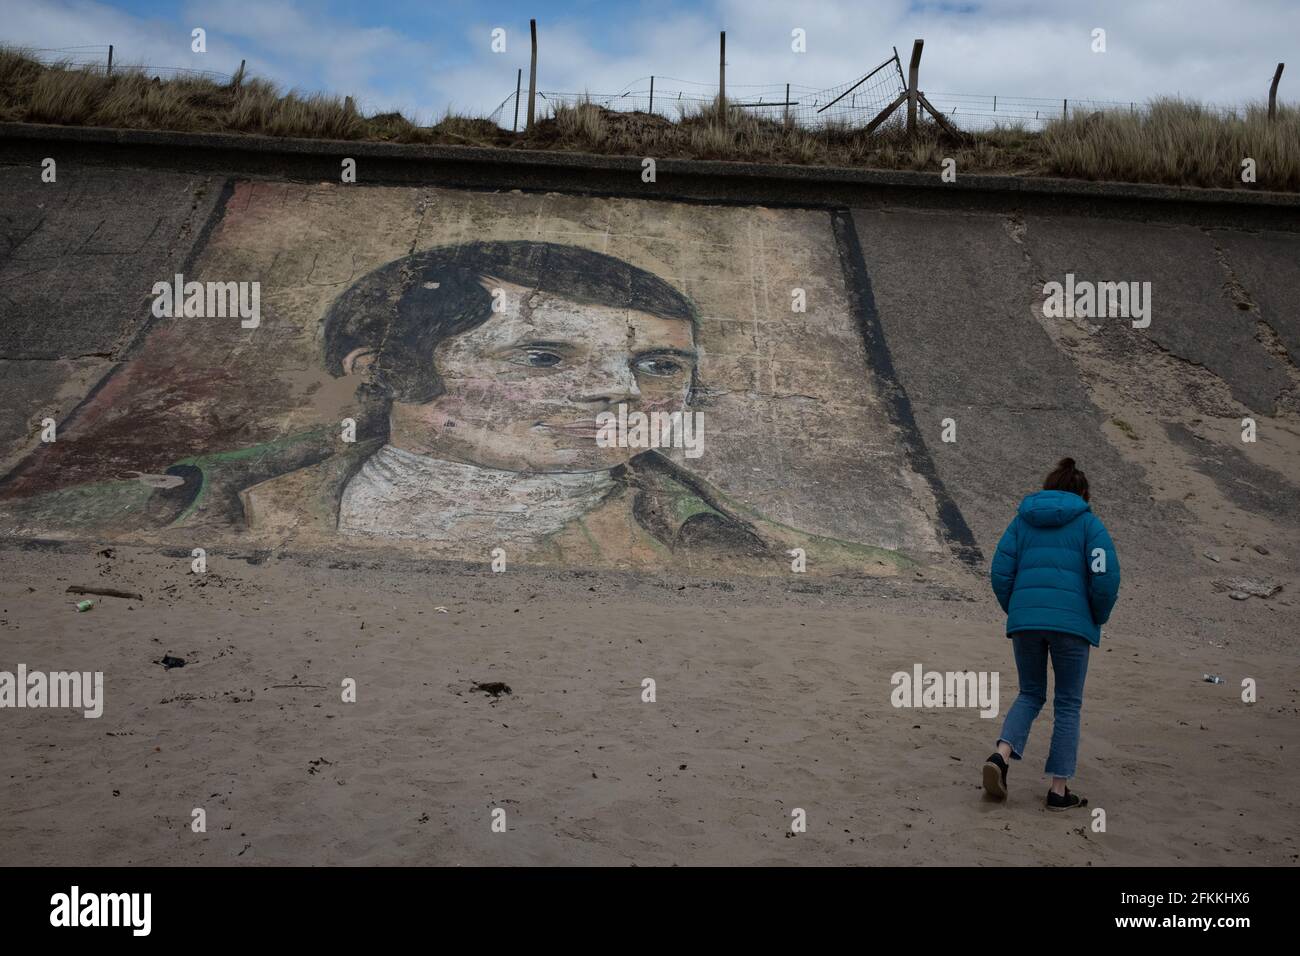 Porträt des schottischen Dichters Robert Burns, gemalt auf einer Betonwand am Strand von Ardeer, in Ardeer, Schottland, am 2. Mai 2021. Stockfoto